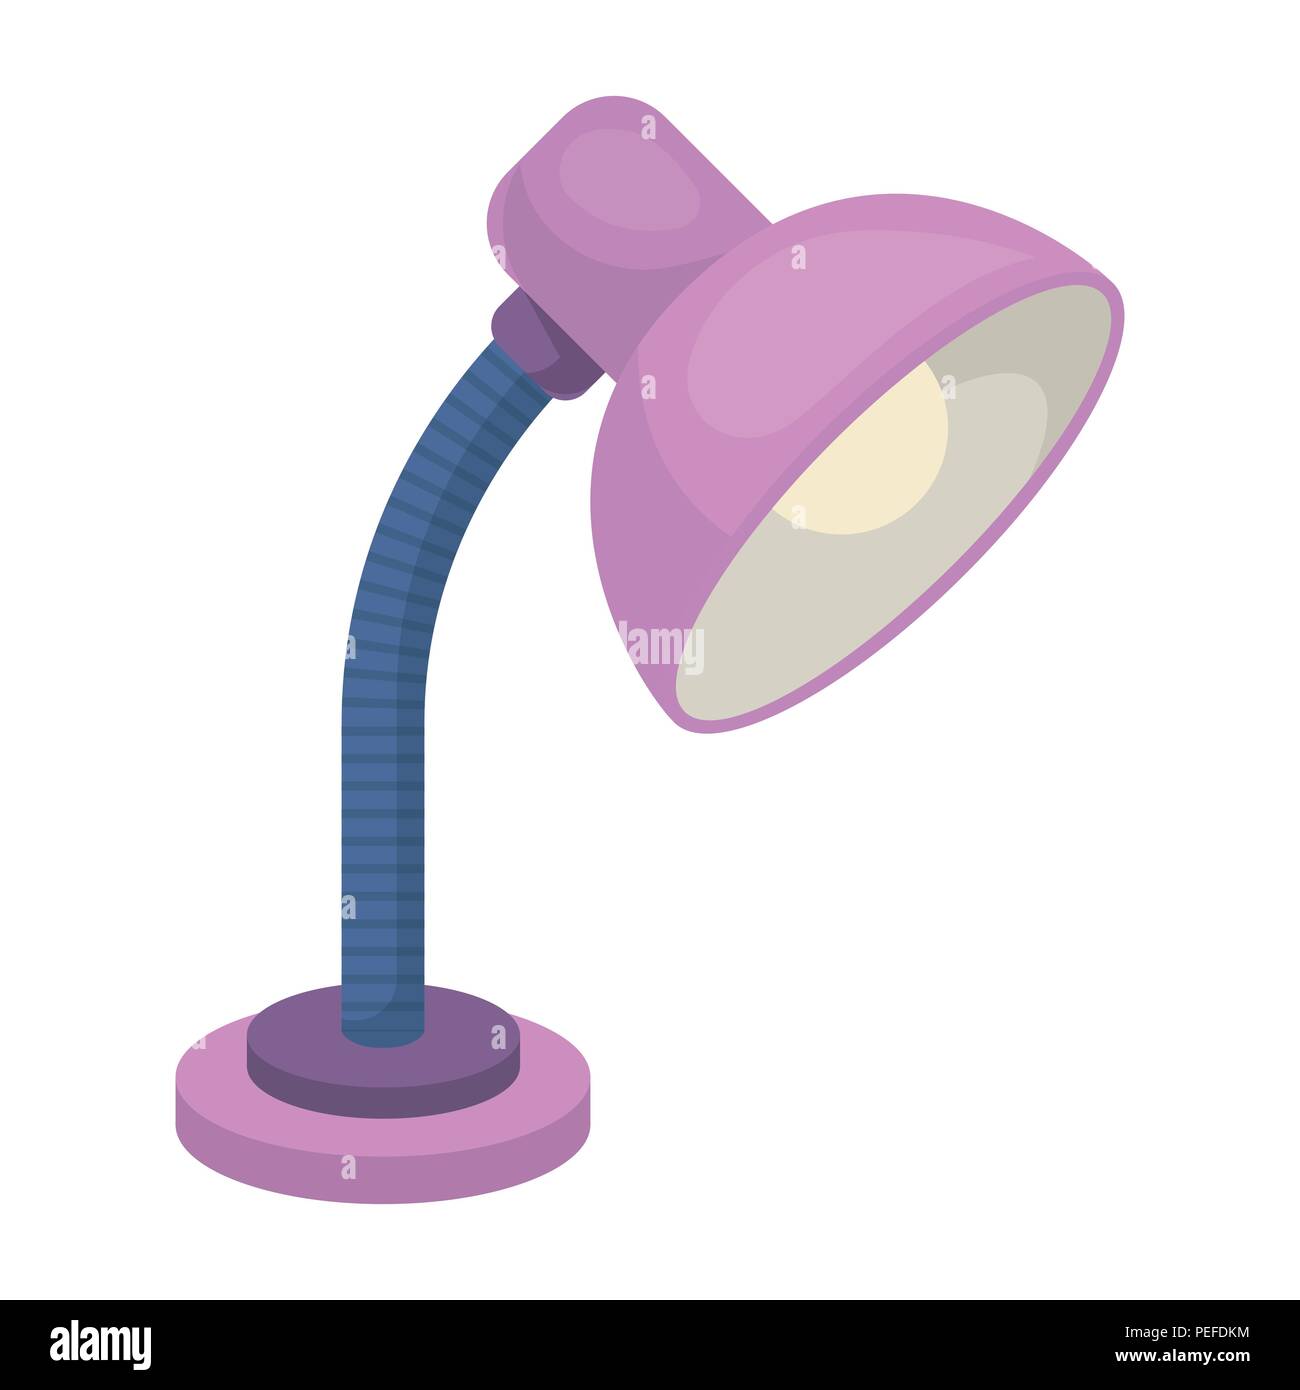 table lamp clipart cartoon